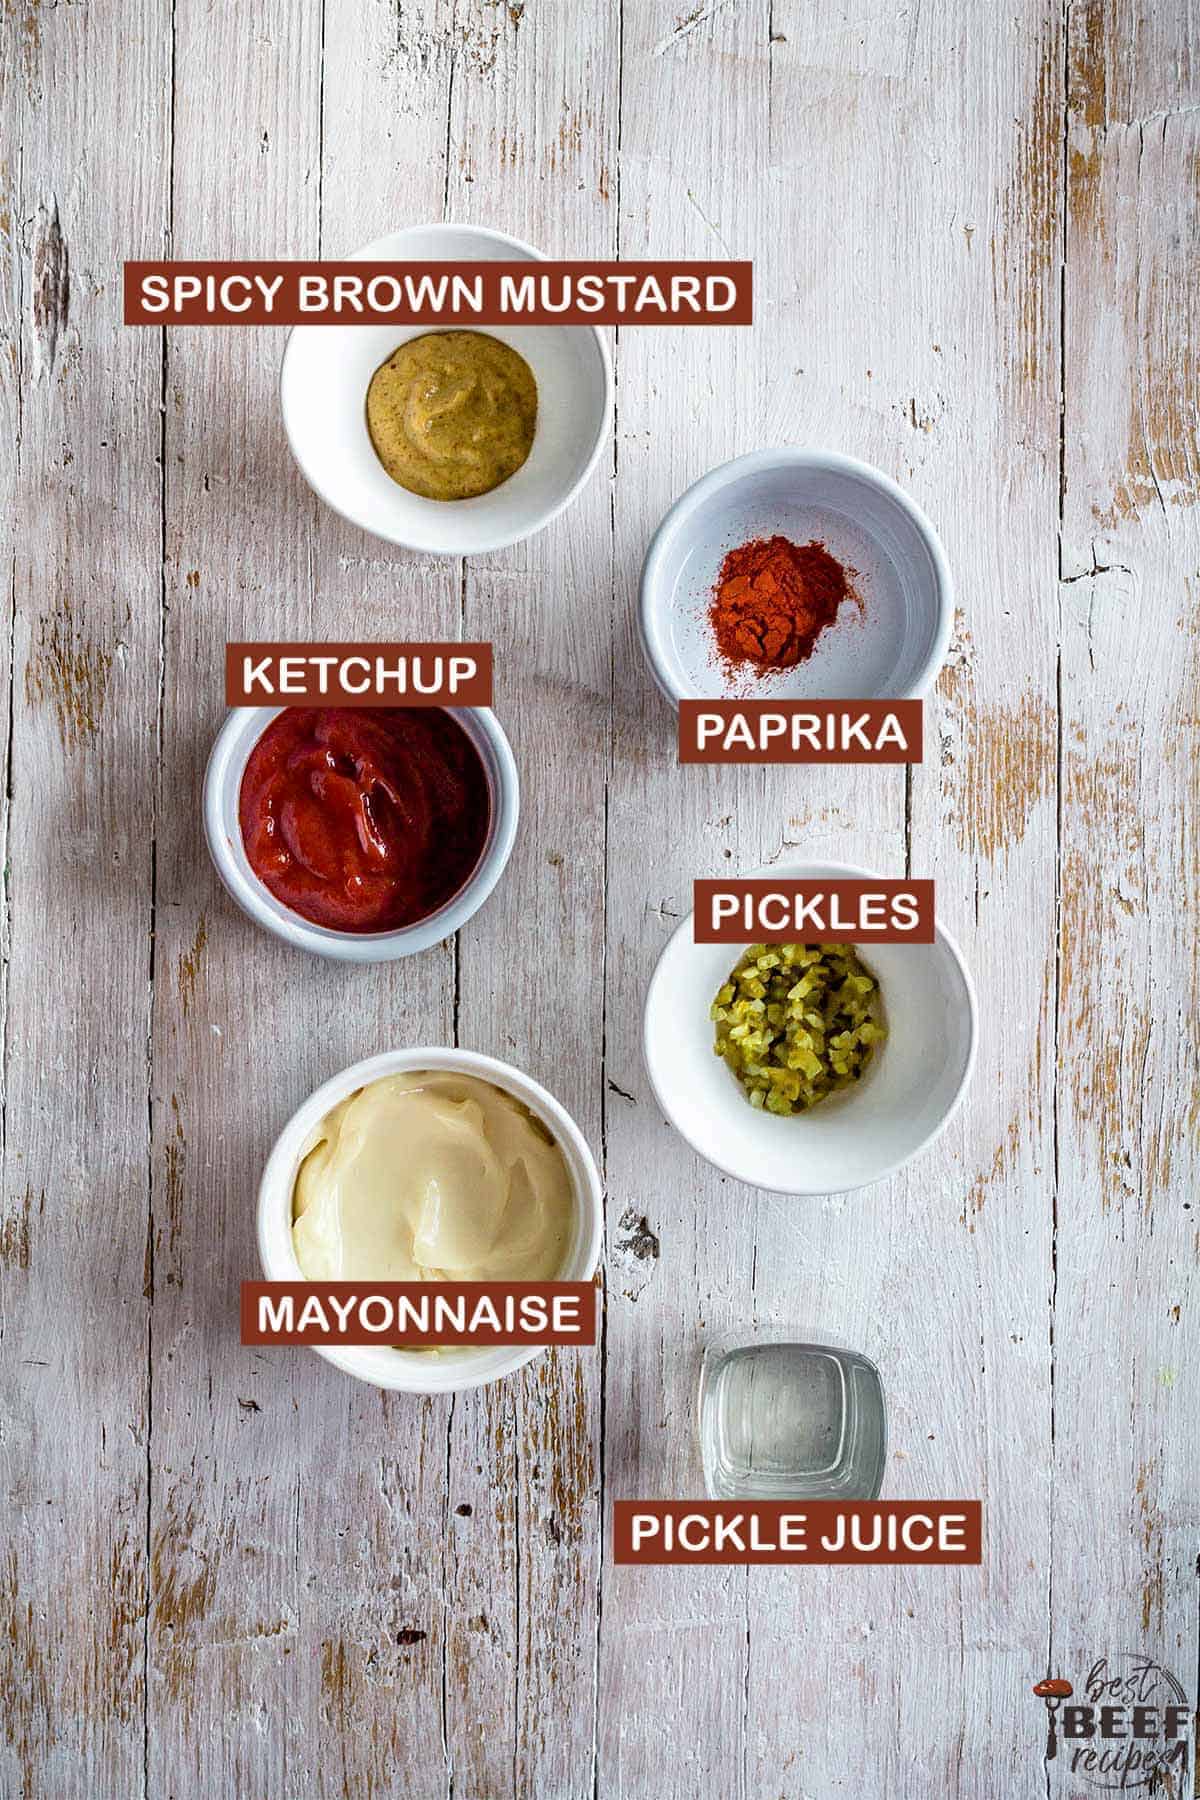 burger sauce ingredients